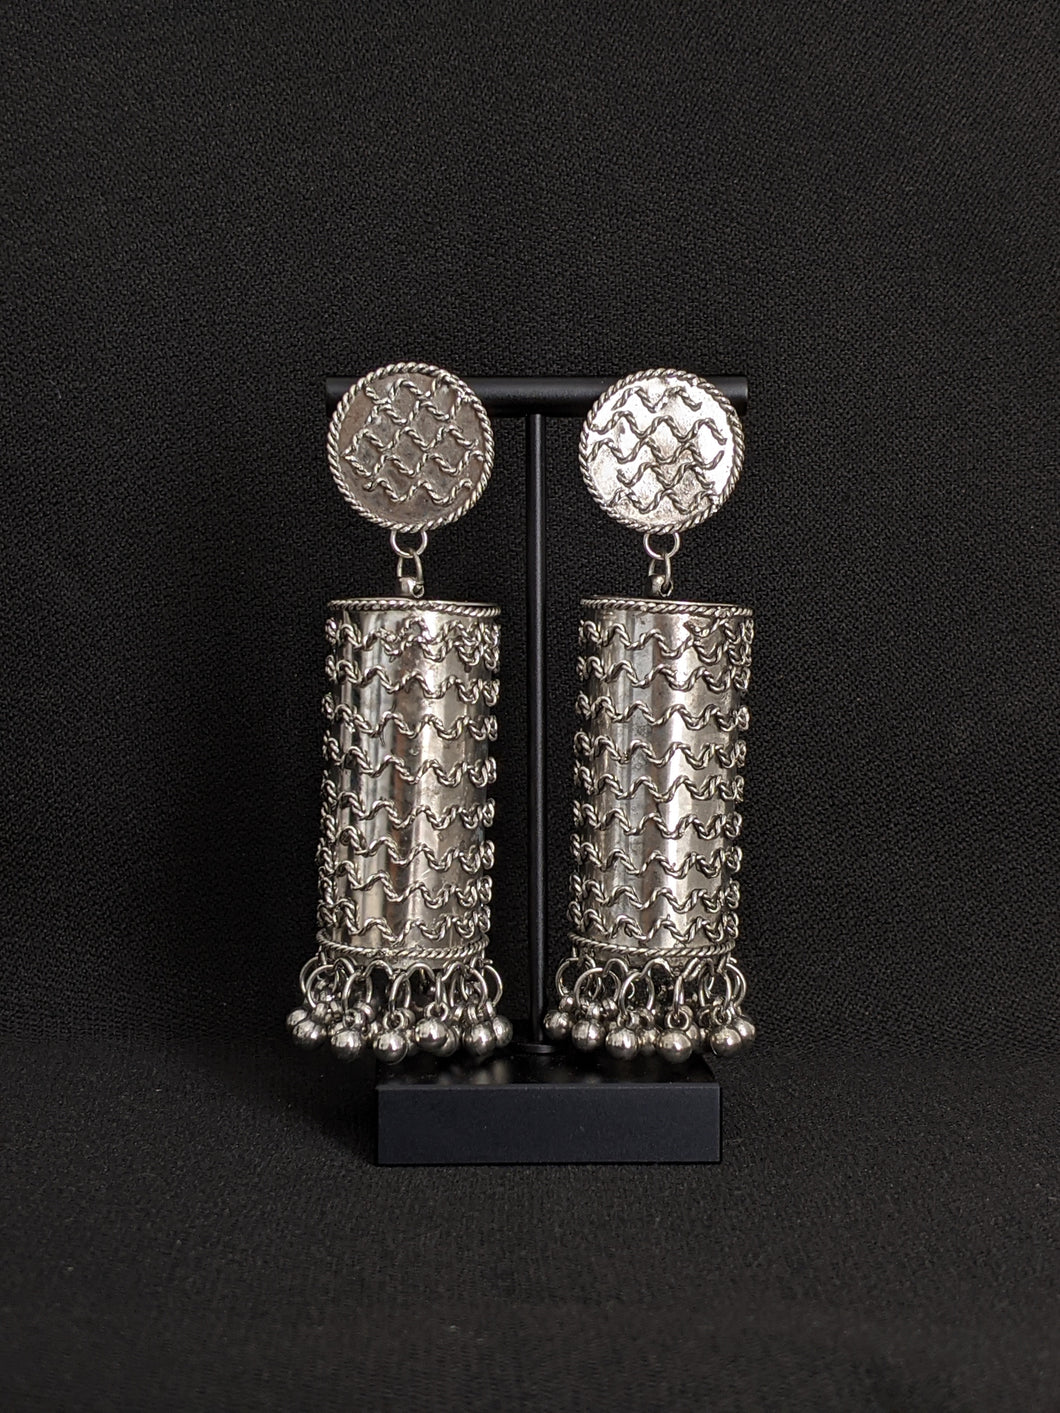 oxidized silver earrings, oxidized silver jewelry, indian jewelry, jewelry for women, earrings, earring for women,  indian earrings, casual earrings, silver earrings